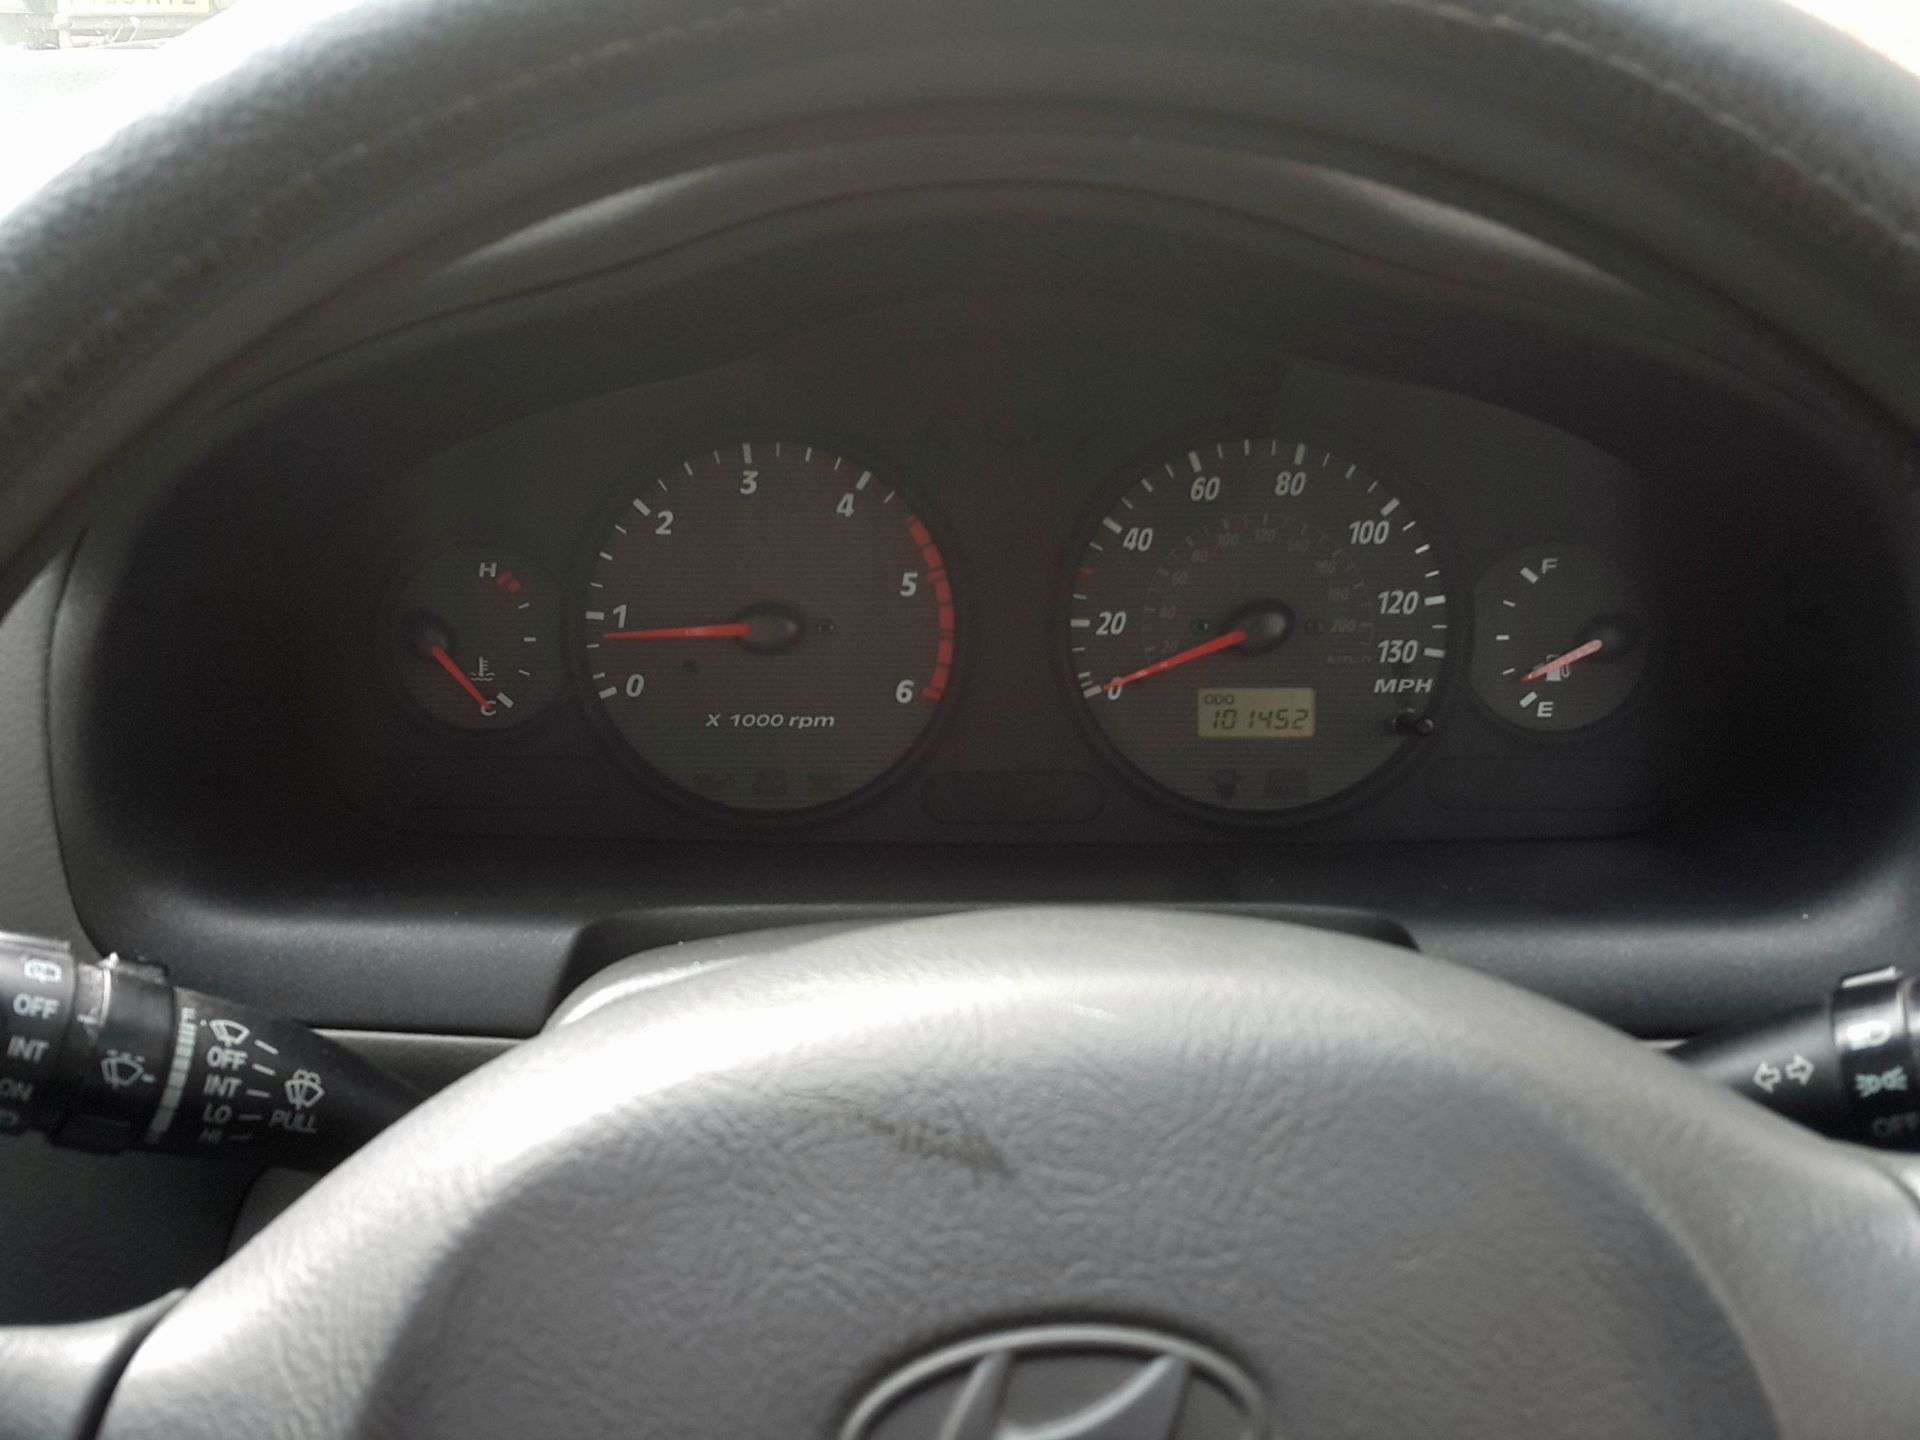 Hyundai Santa Fe - 4x4, Manual, Diesel, 101000 Miles, MOT'd Until Sep 2018 - Buyers Premium 7% - Image 12 of 19